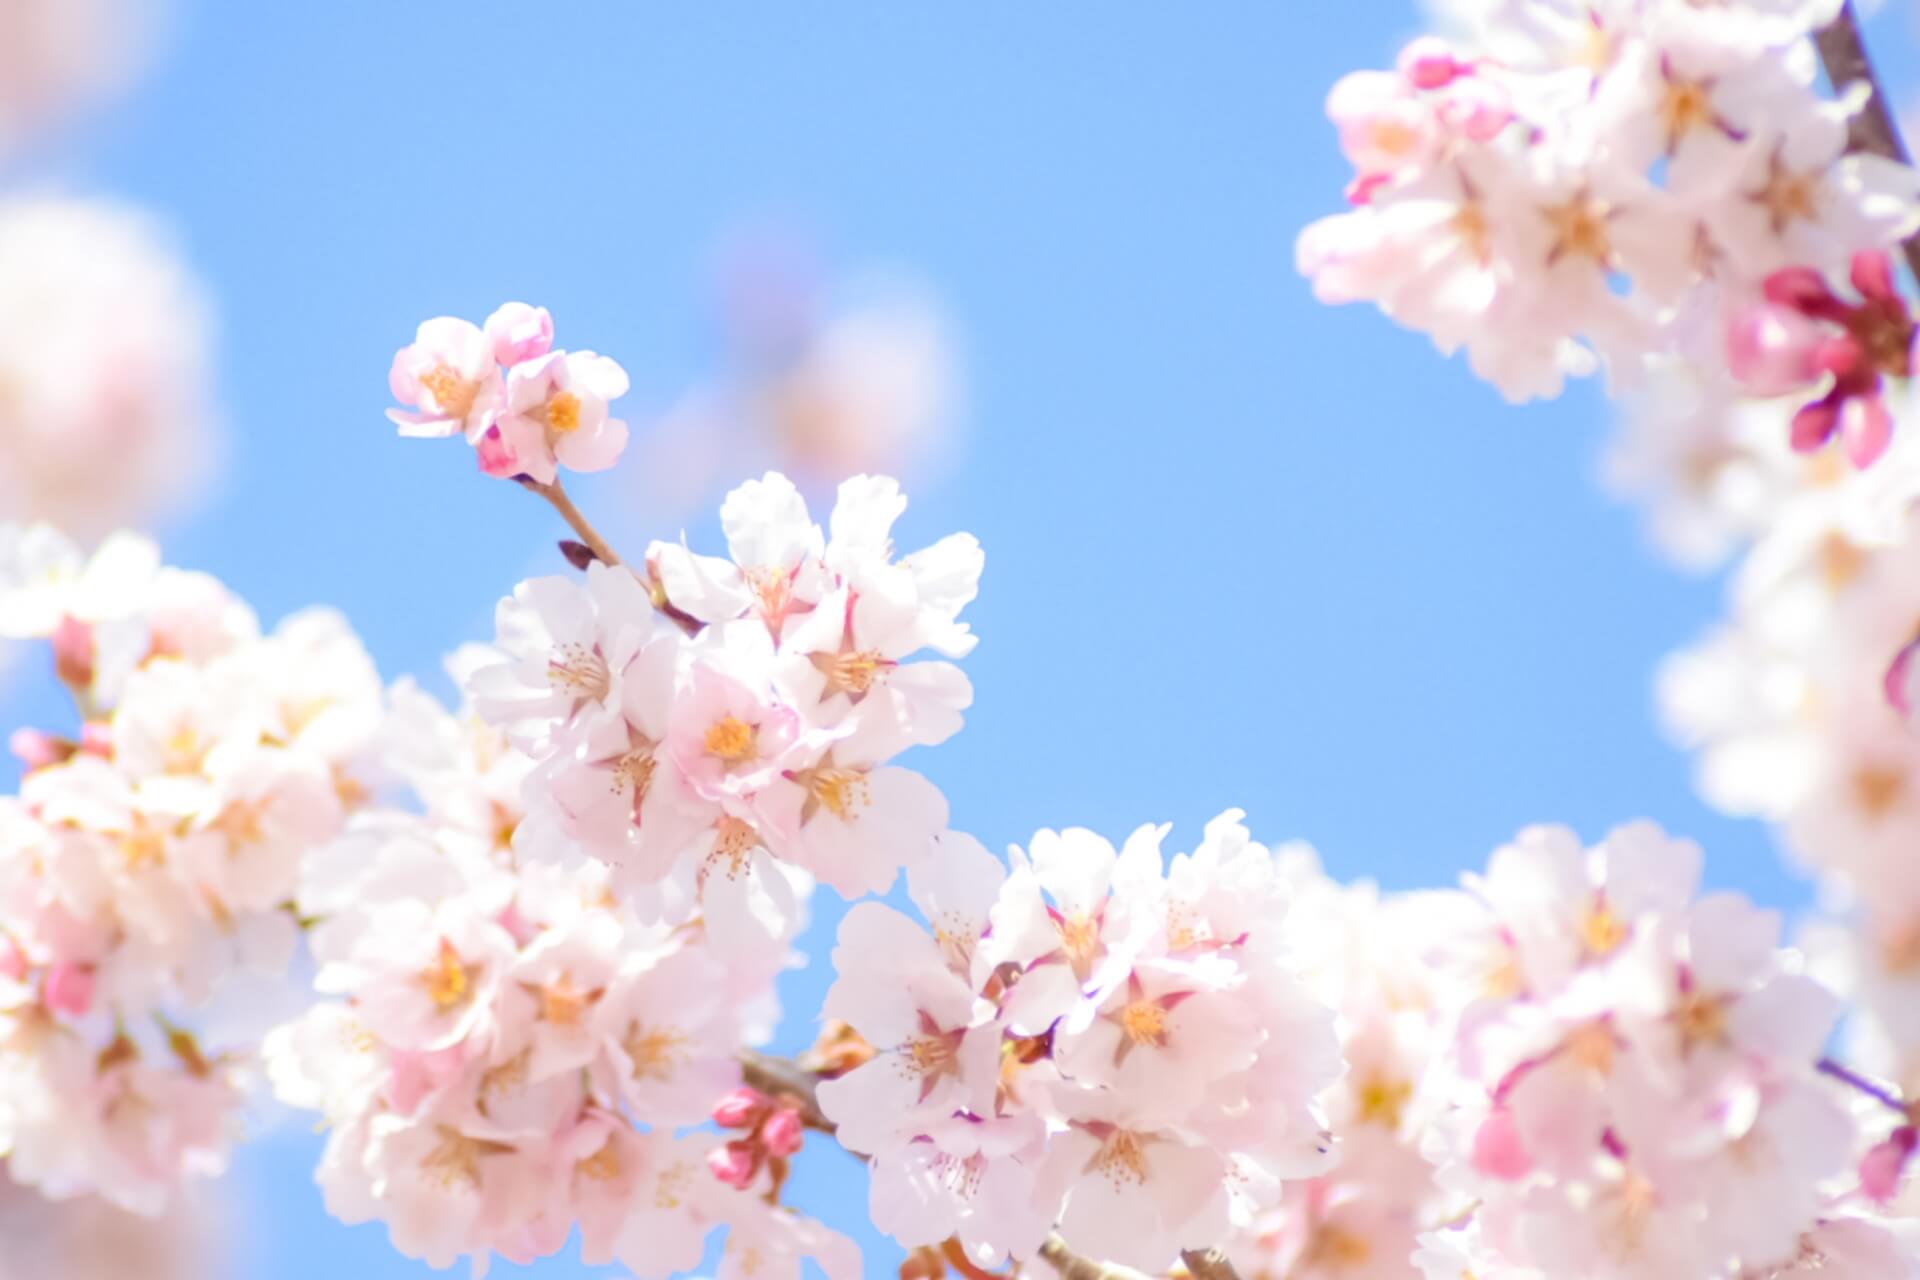 東京で桜が開花、さあ、今年はどうお花見する？ コロナ対策忘れずに……